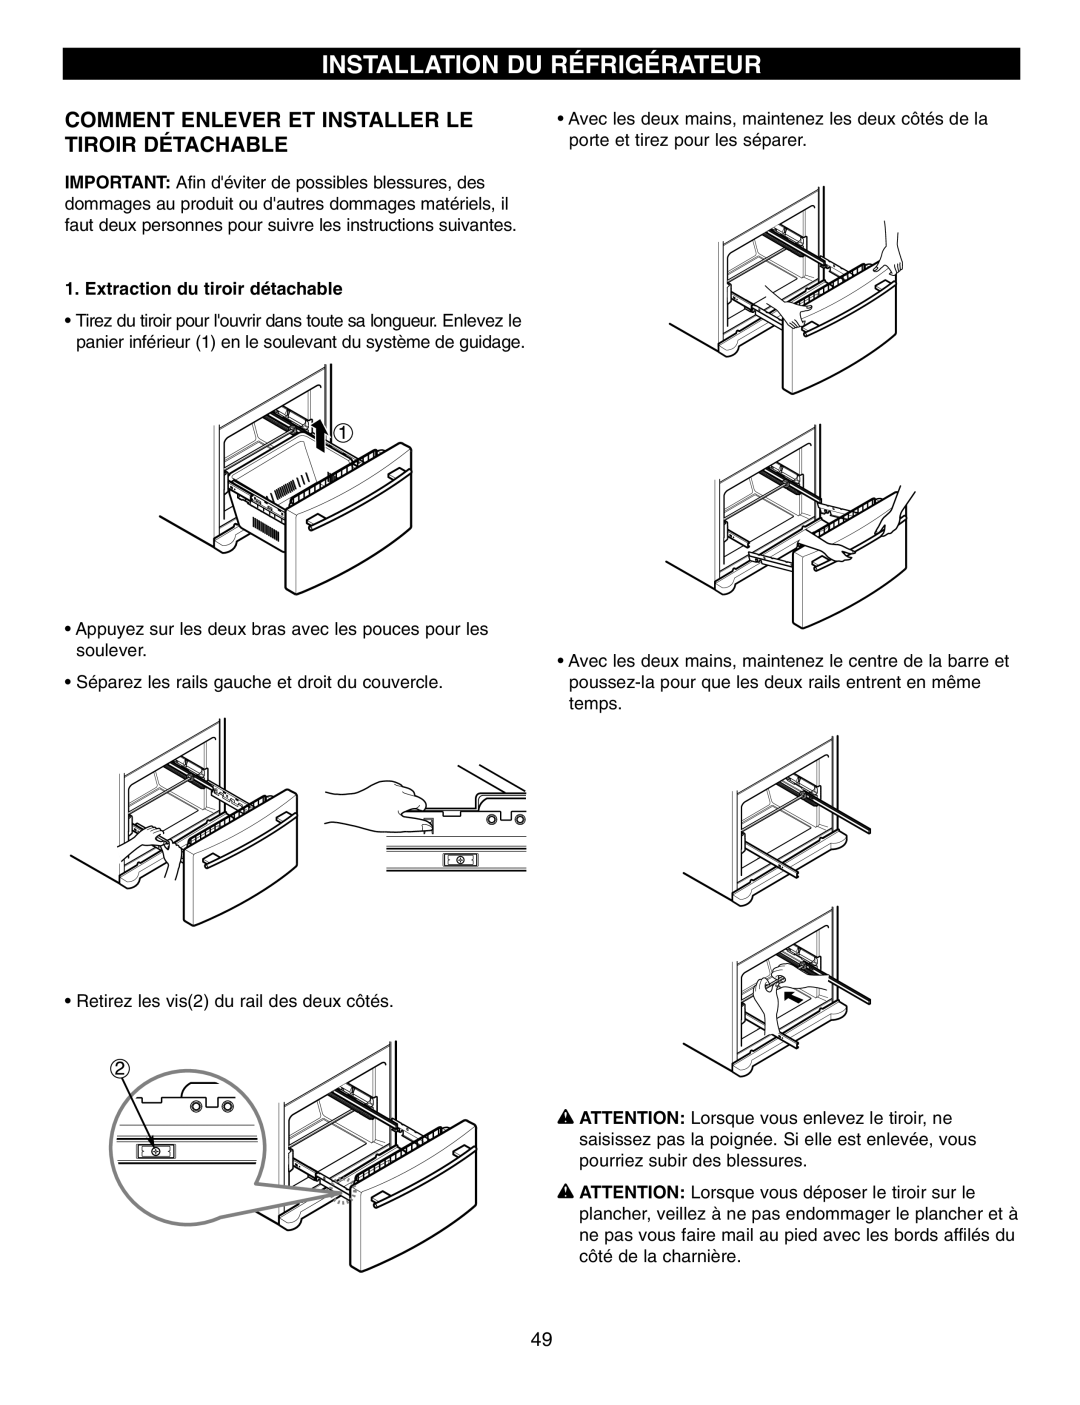 LG Electronics LFX25970, LFX25960 manual Installation Du Réfrigérateur, Comment Enlever Et Installer Le Tiroir Détachable 